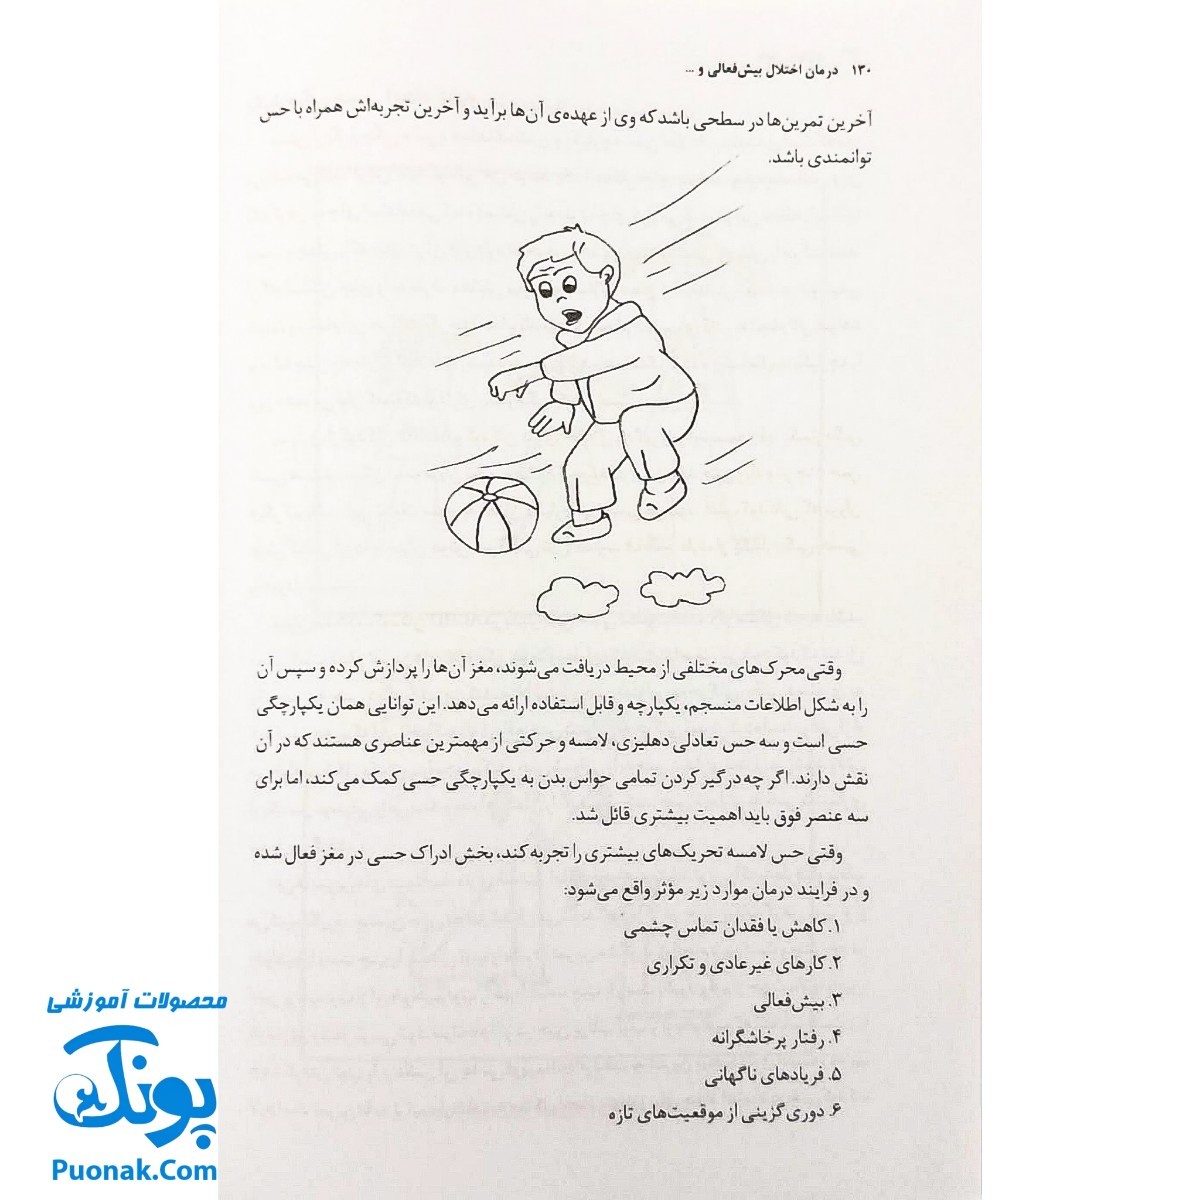 کتاب درمان اختلال بیش فعالی و عدم تمرکز ADHD (برنامه عملی برای درمان) اثر دکتر مصطفی تبریزی